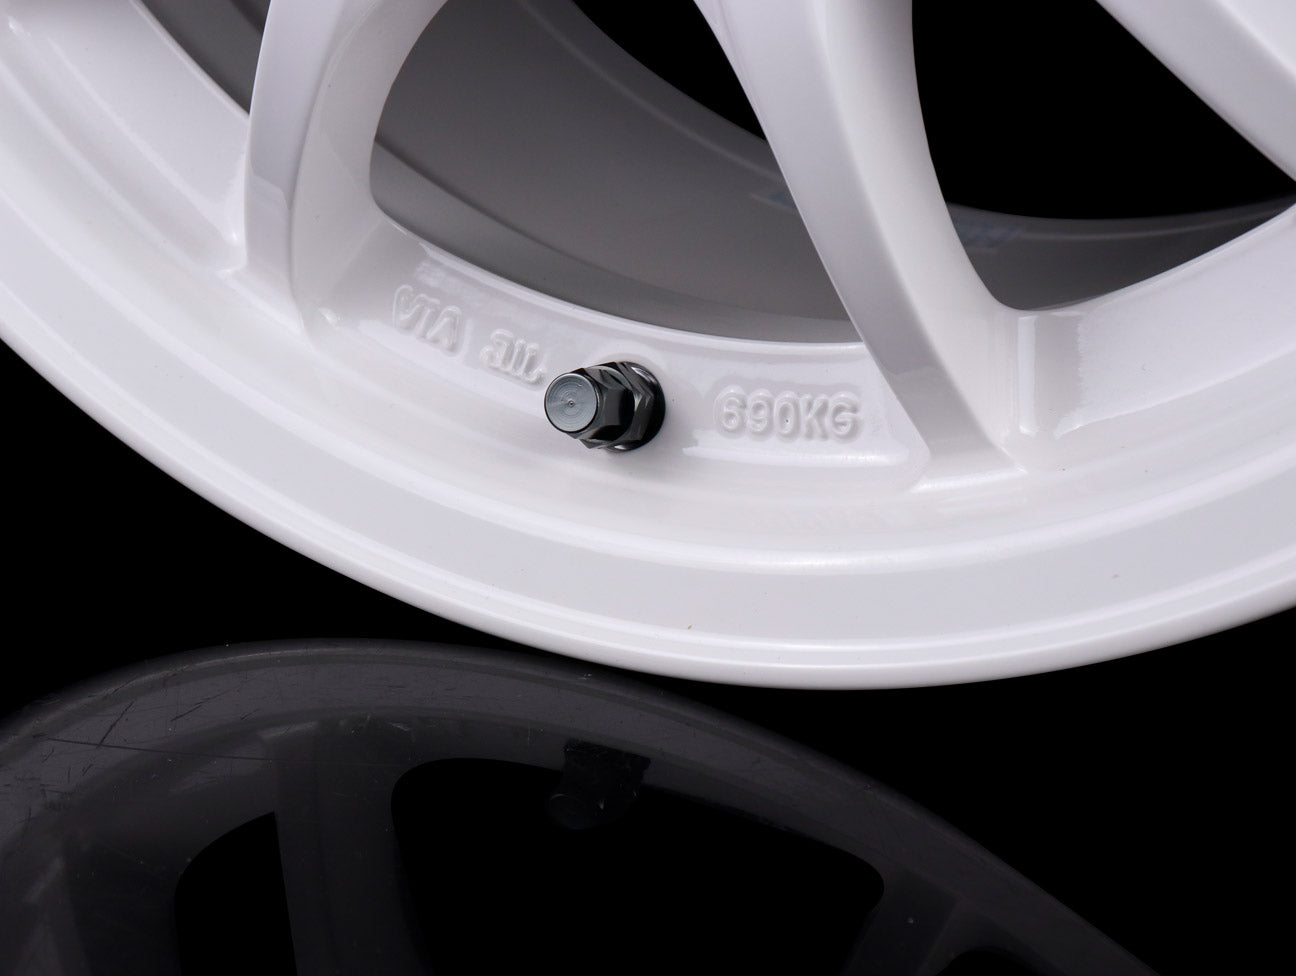 Mugen MC10L White Wheel - 15x8.0 / 5x114 / +32